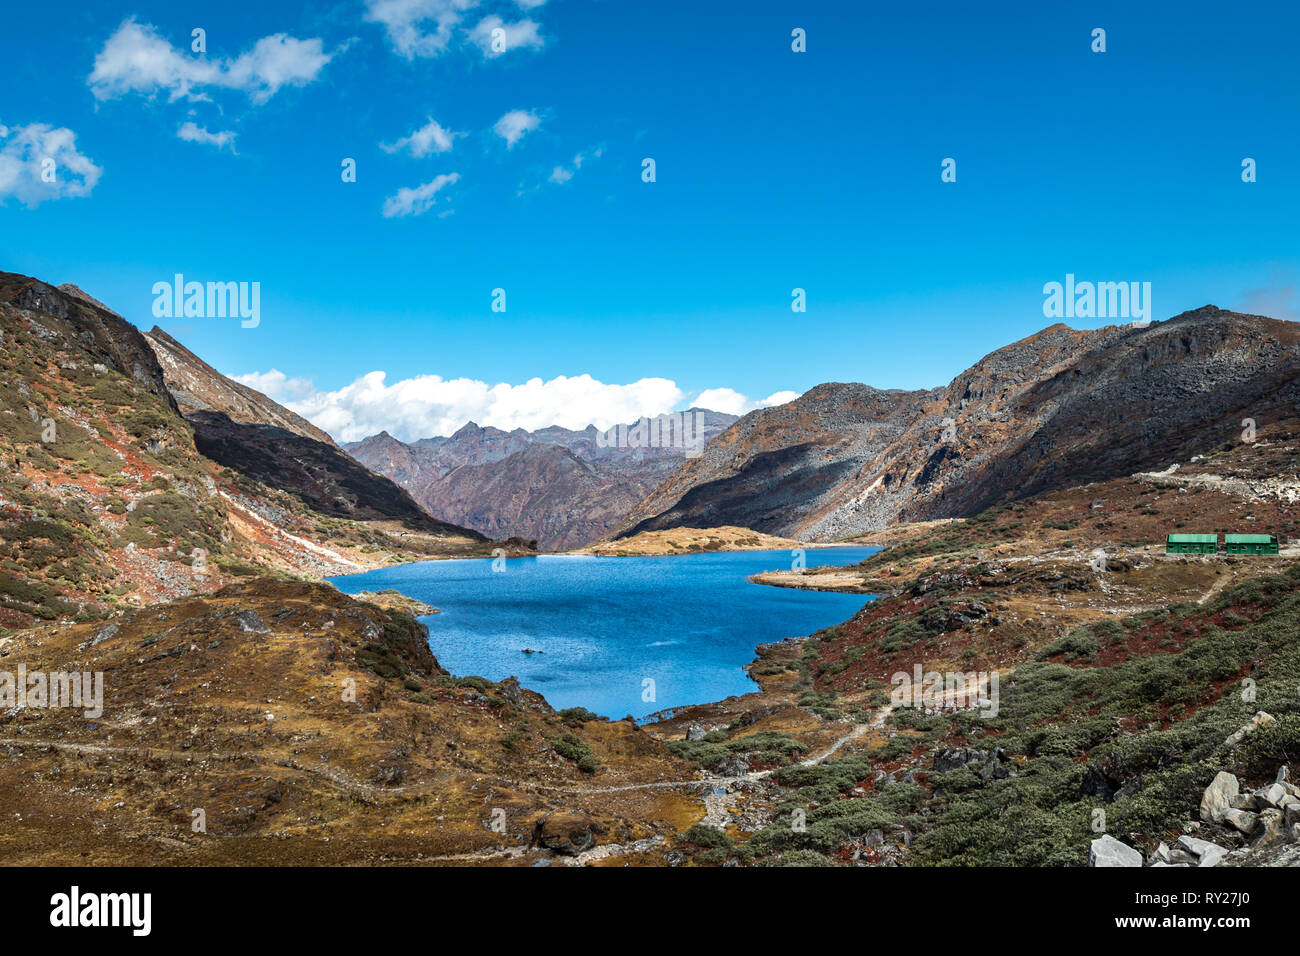 Paysage de lacs et de l'Arunachal Pradesh, l'état de l'Inde du nord-est Banque D'Images